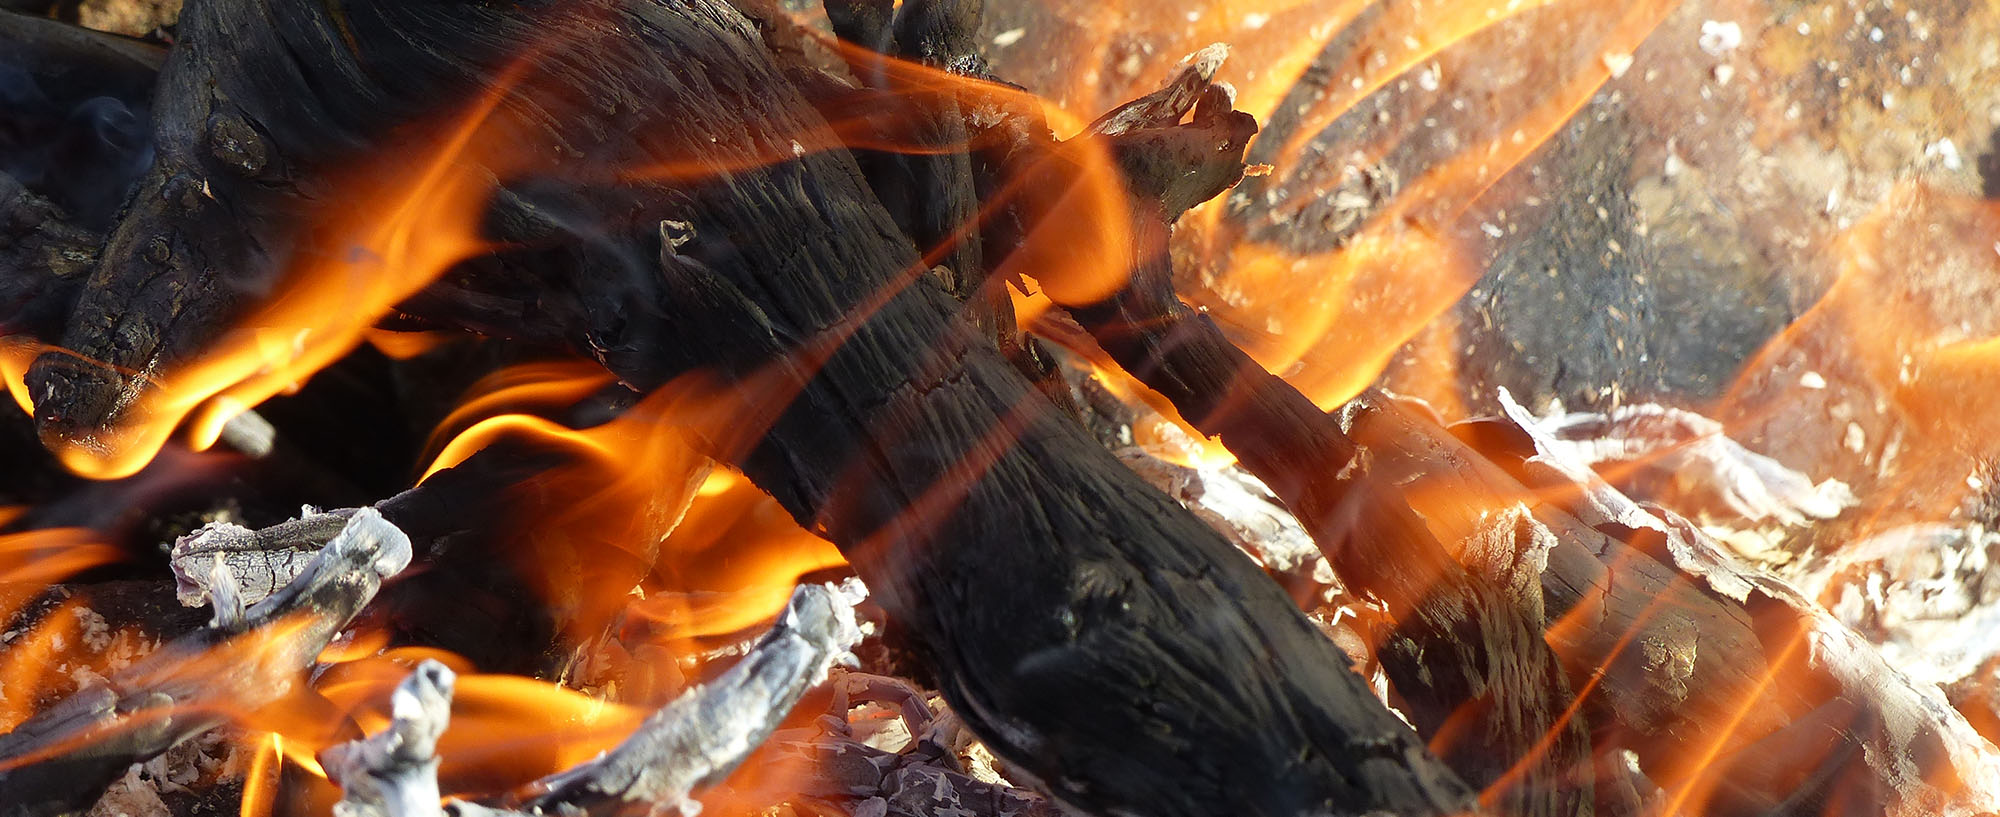 Bålet og menneskenes forhold til ild er helt sentralt i samfunnsutviklingen og kanskje det mest essensielle når det gjelder overlevelse og sosialt samkvem i hus, hytte og i friluftssammenhenger i skog og mark og i fjellet. Engelskmennene kaller vår form for bålbrenning på tur for "The Scandinavian Art of Firemaking"